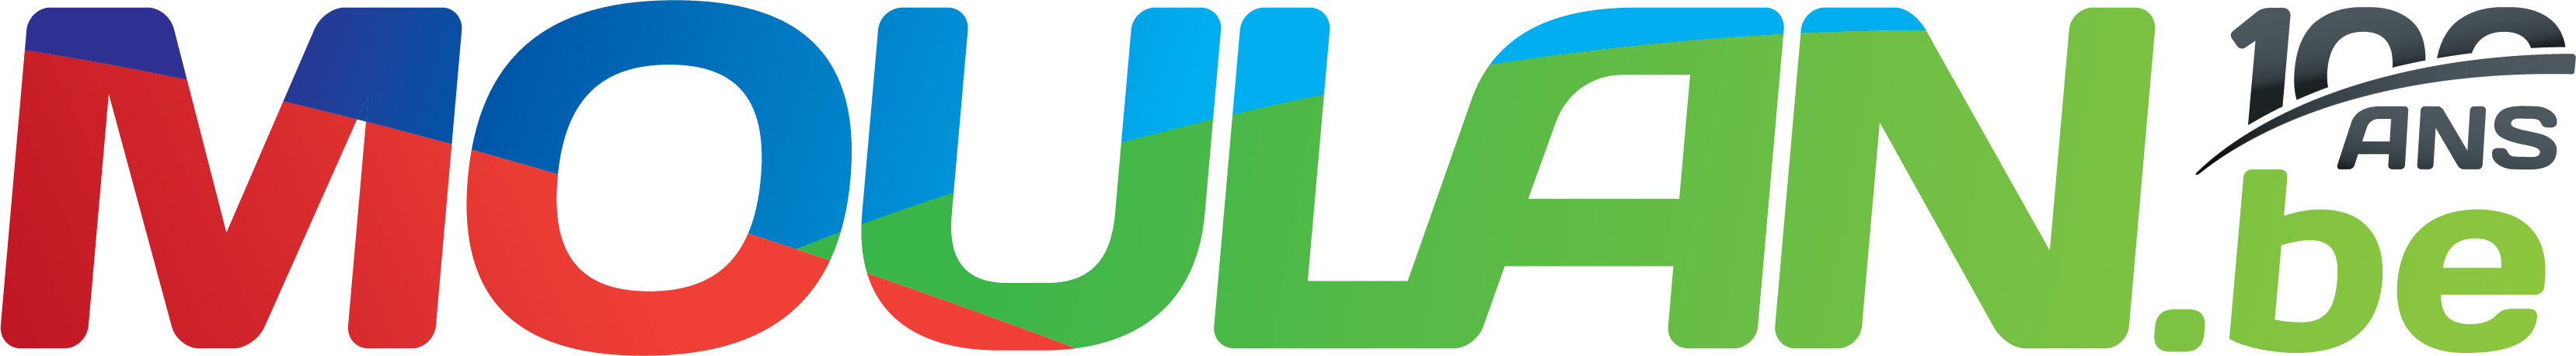 Moulan logo